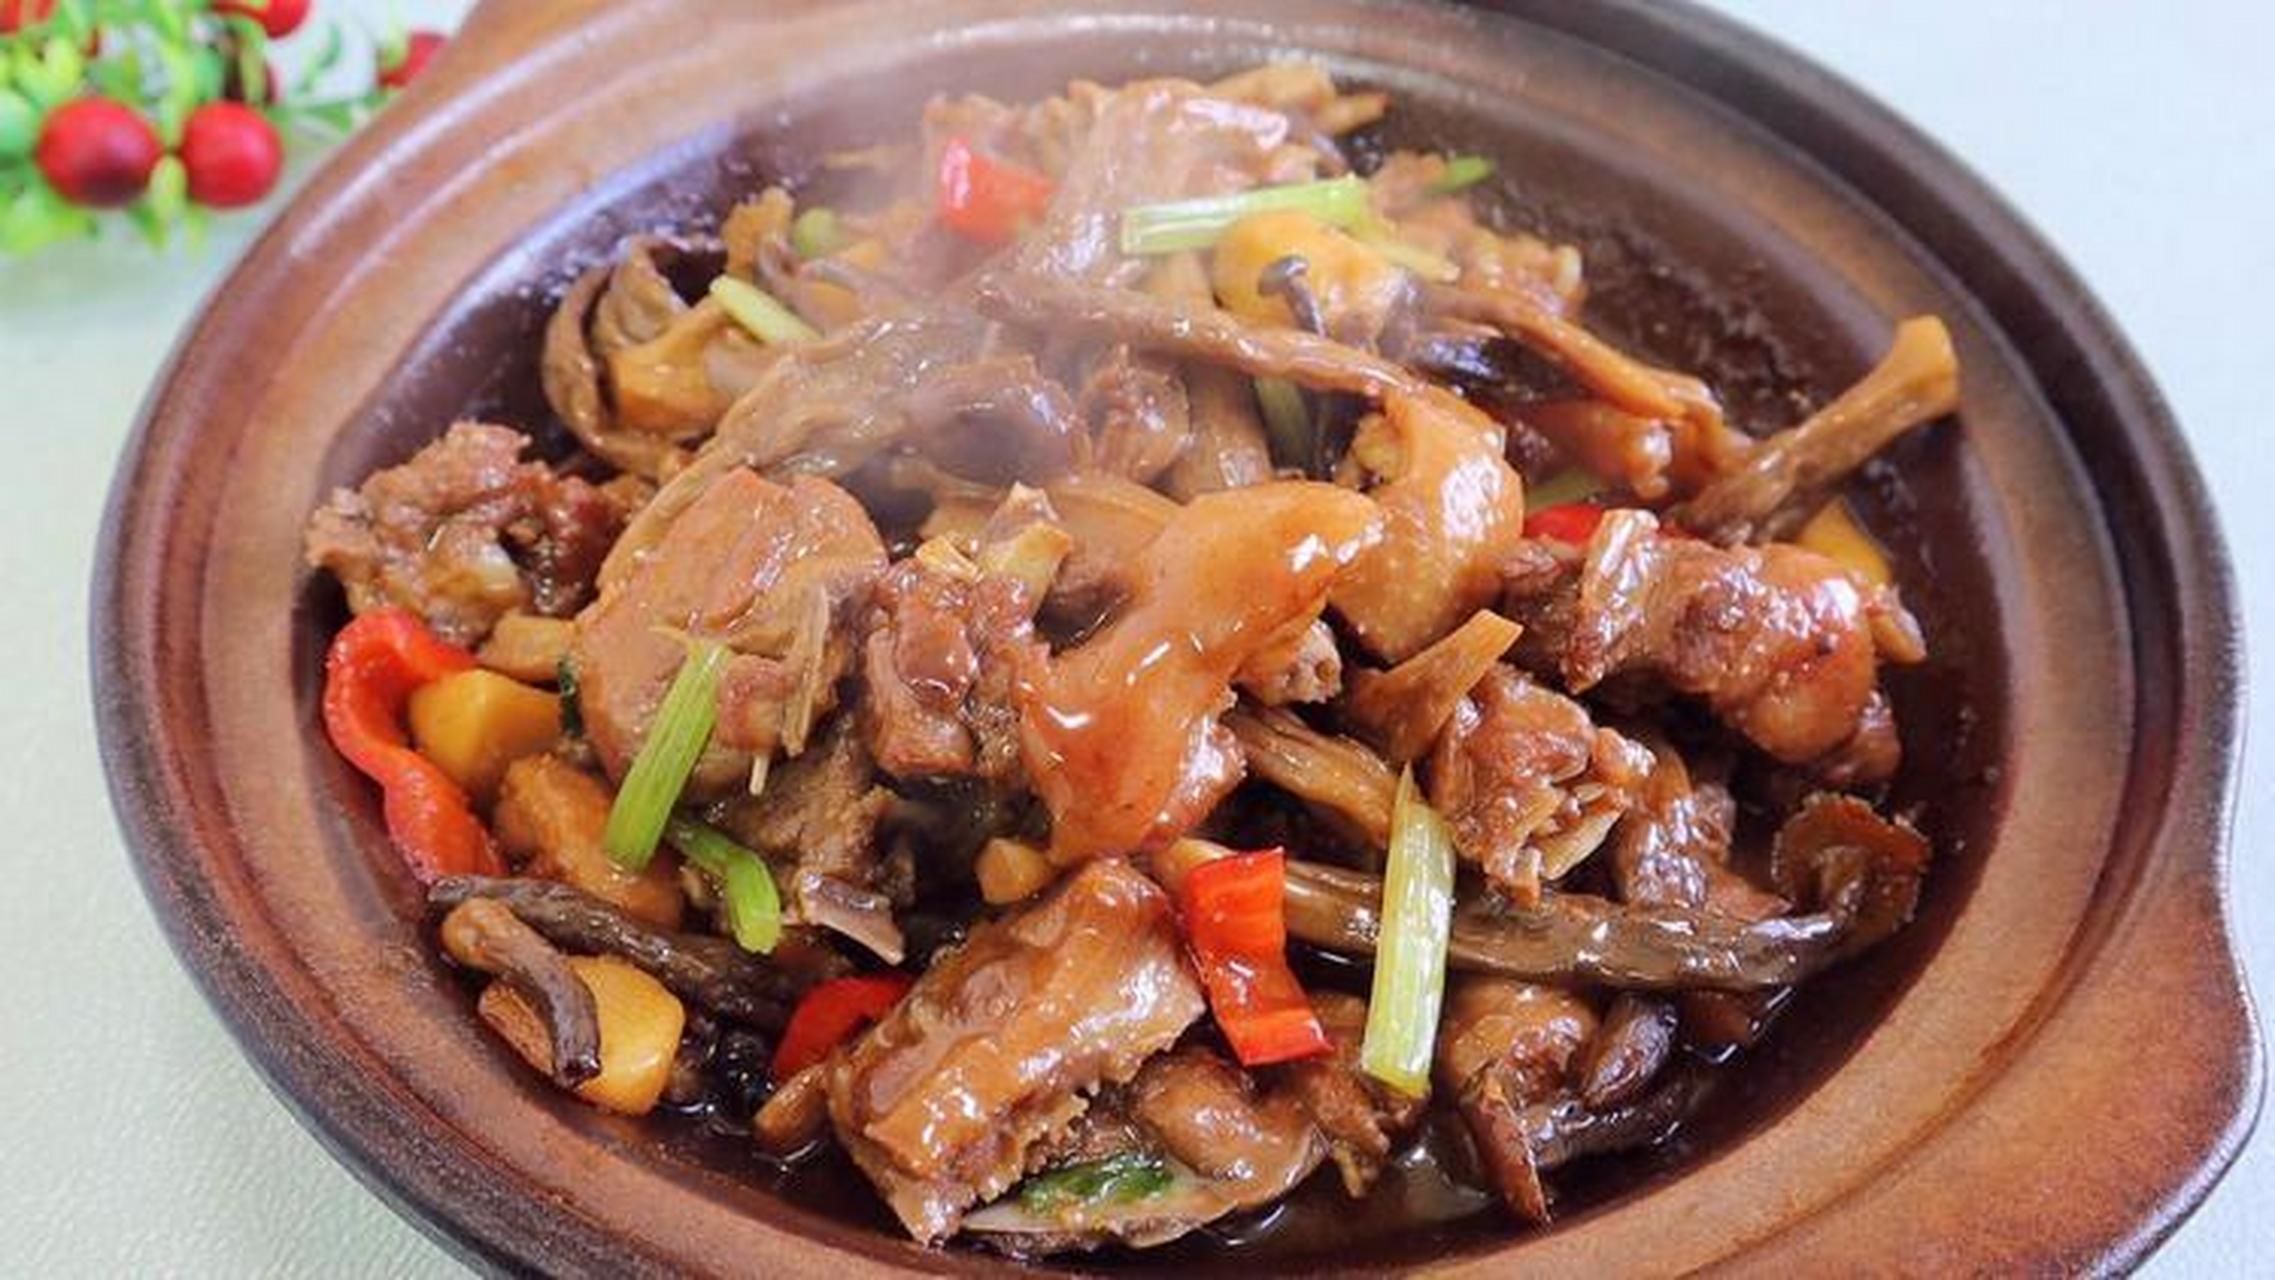 99鹿茸菇焖鸭是一道美味的中式烹饪菜肴,以鸭肉和鹿茸菇为主要食材